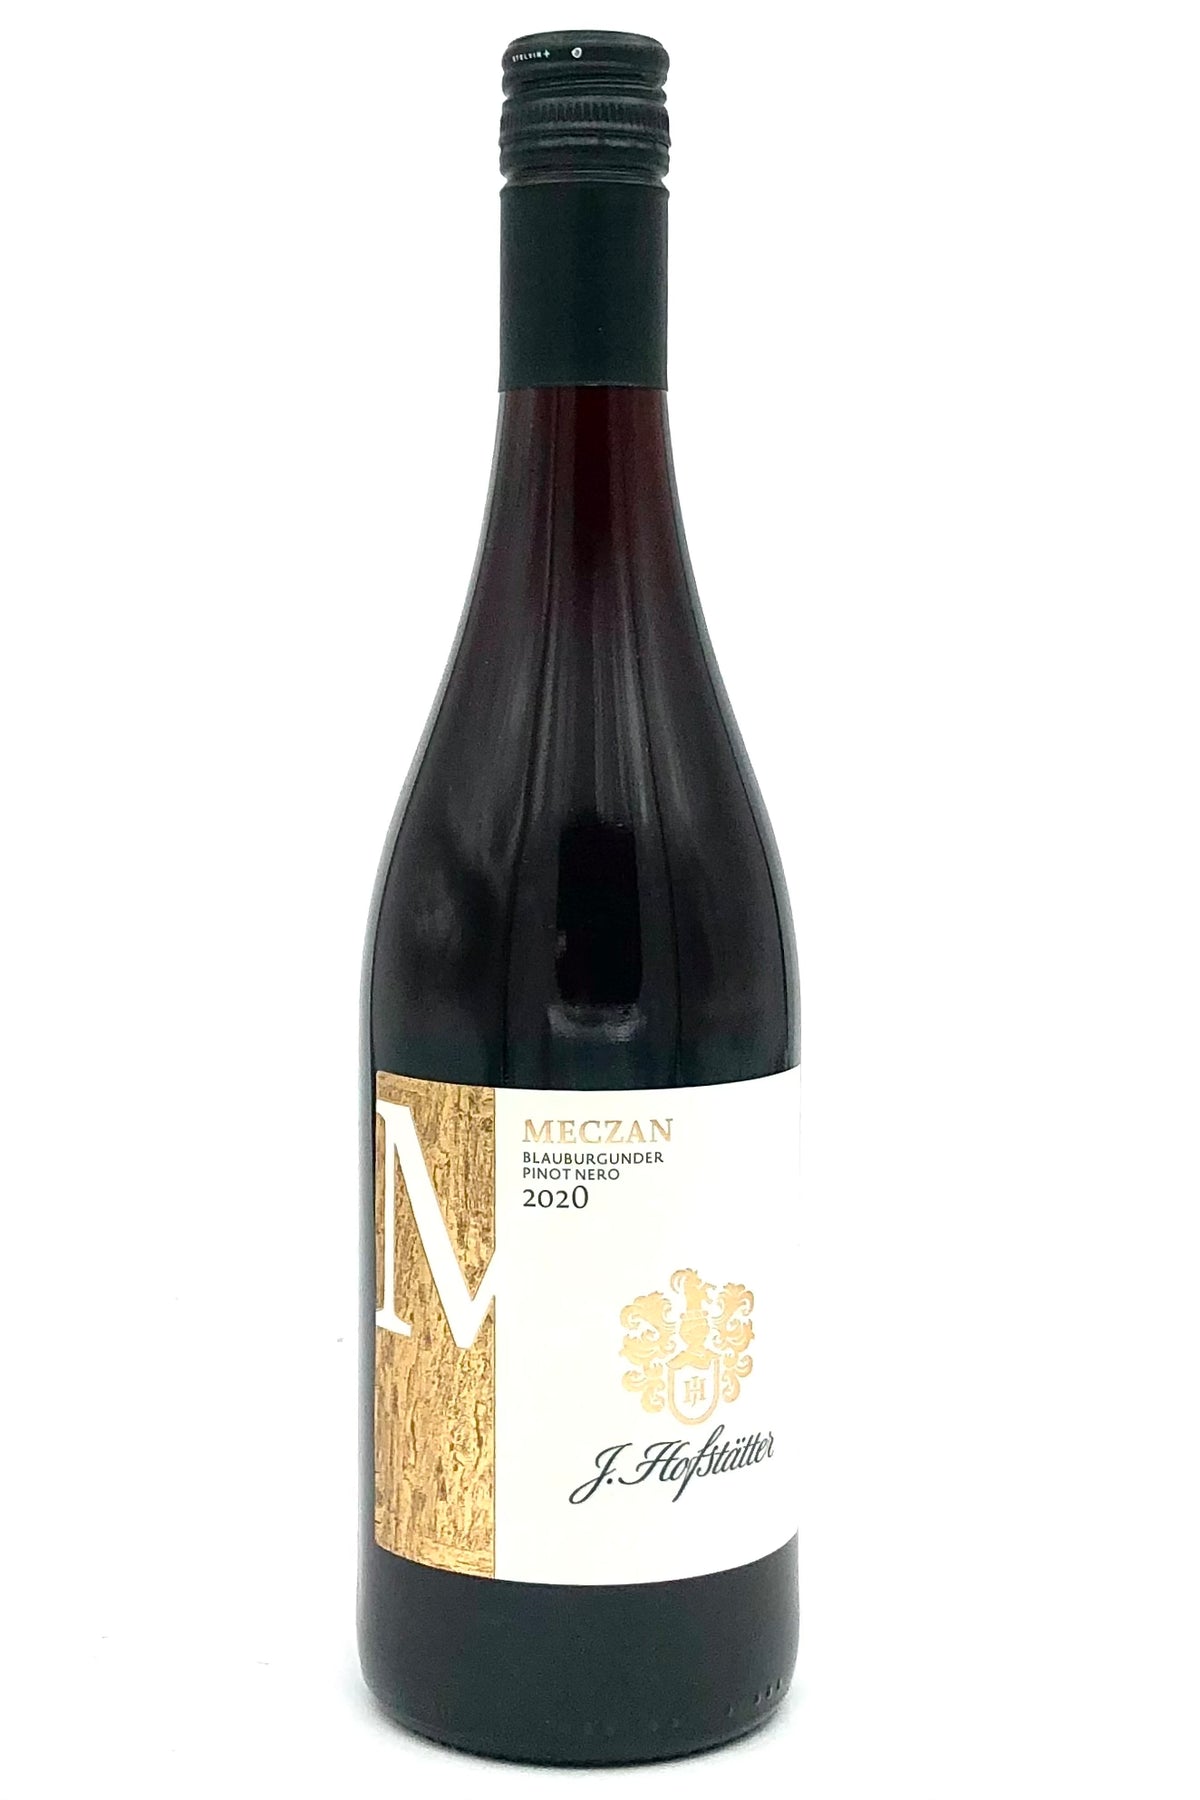 J. Hofstatter 2020 Pinot Nero Meczan Alto Adige